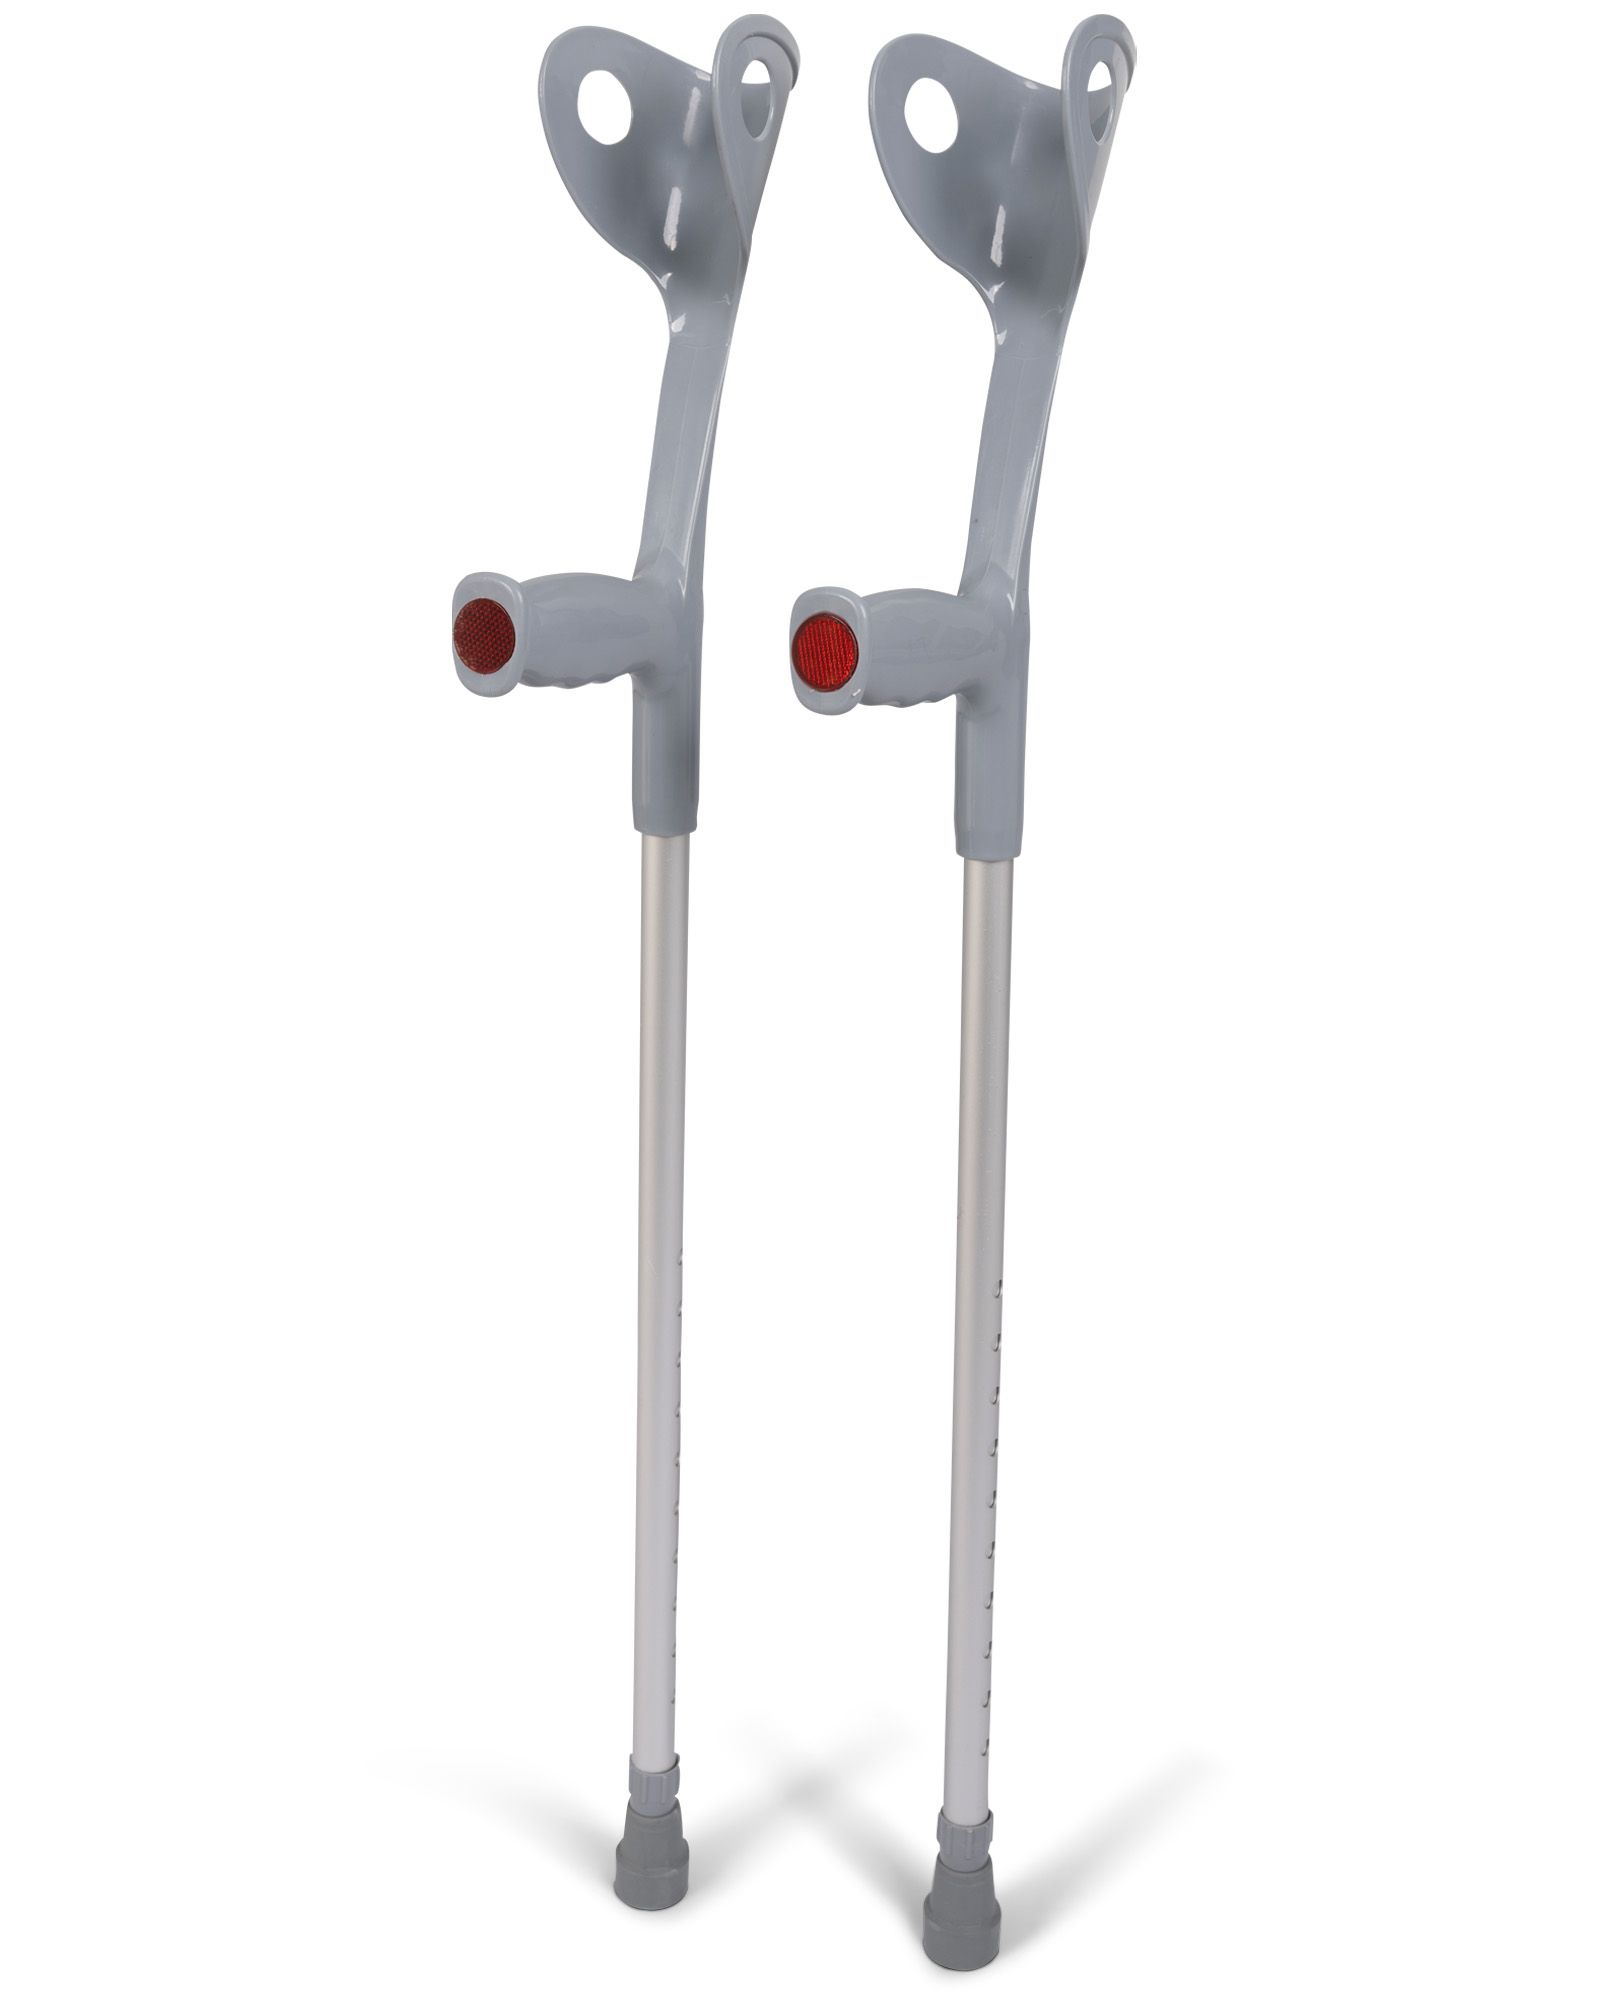 medidu premium elbow crutches per pair for sale